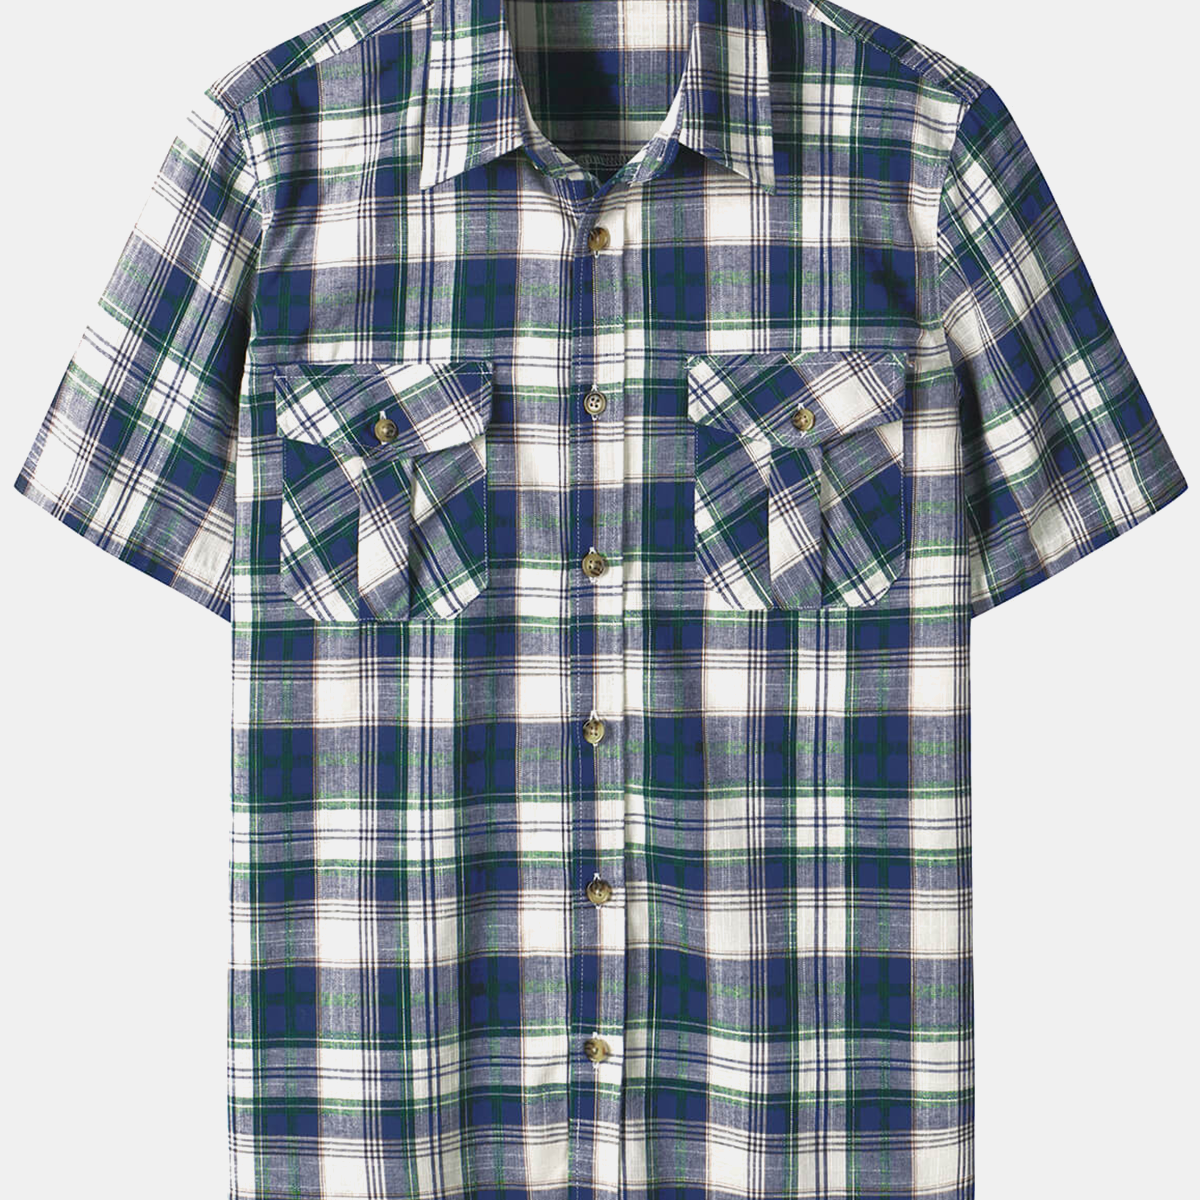 Men's Blue Linen Plaid Pocket Summer Cowboy Check Short Sleeve Button Up Western Shirt